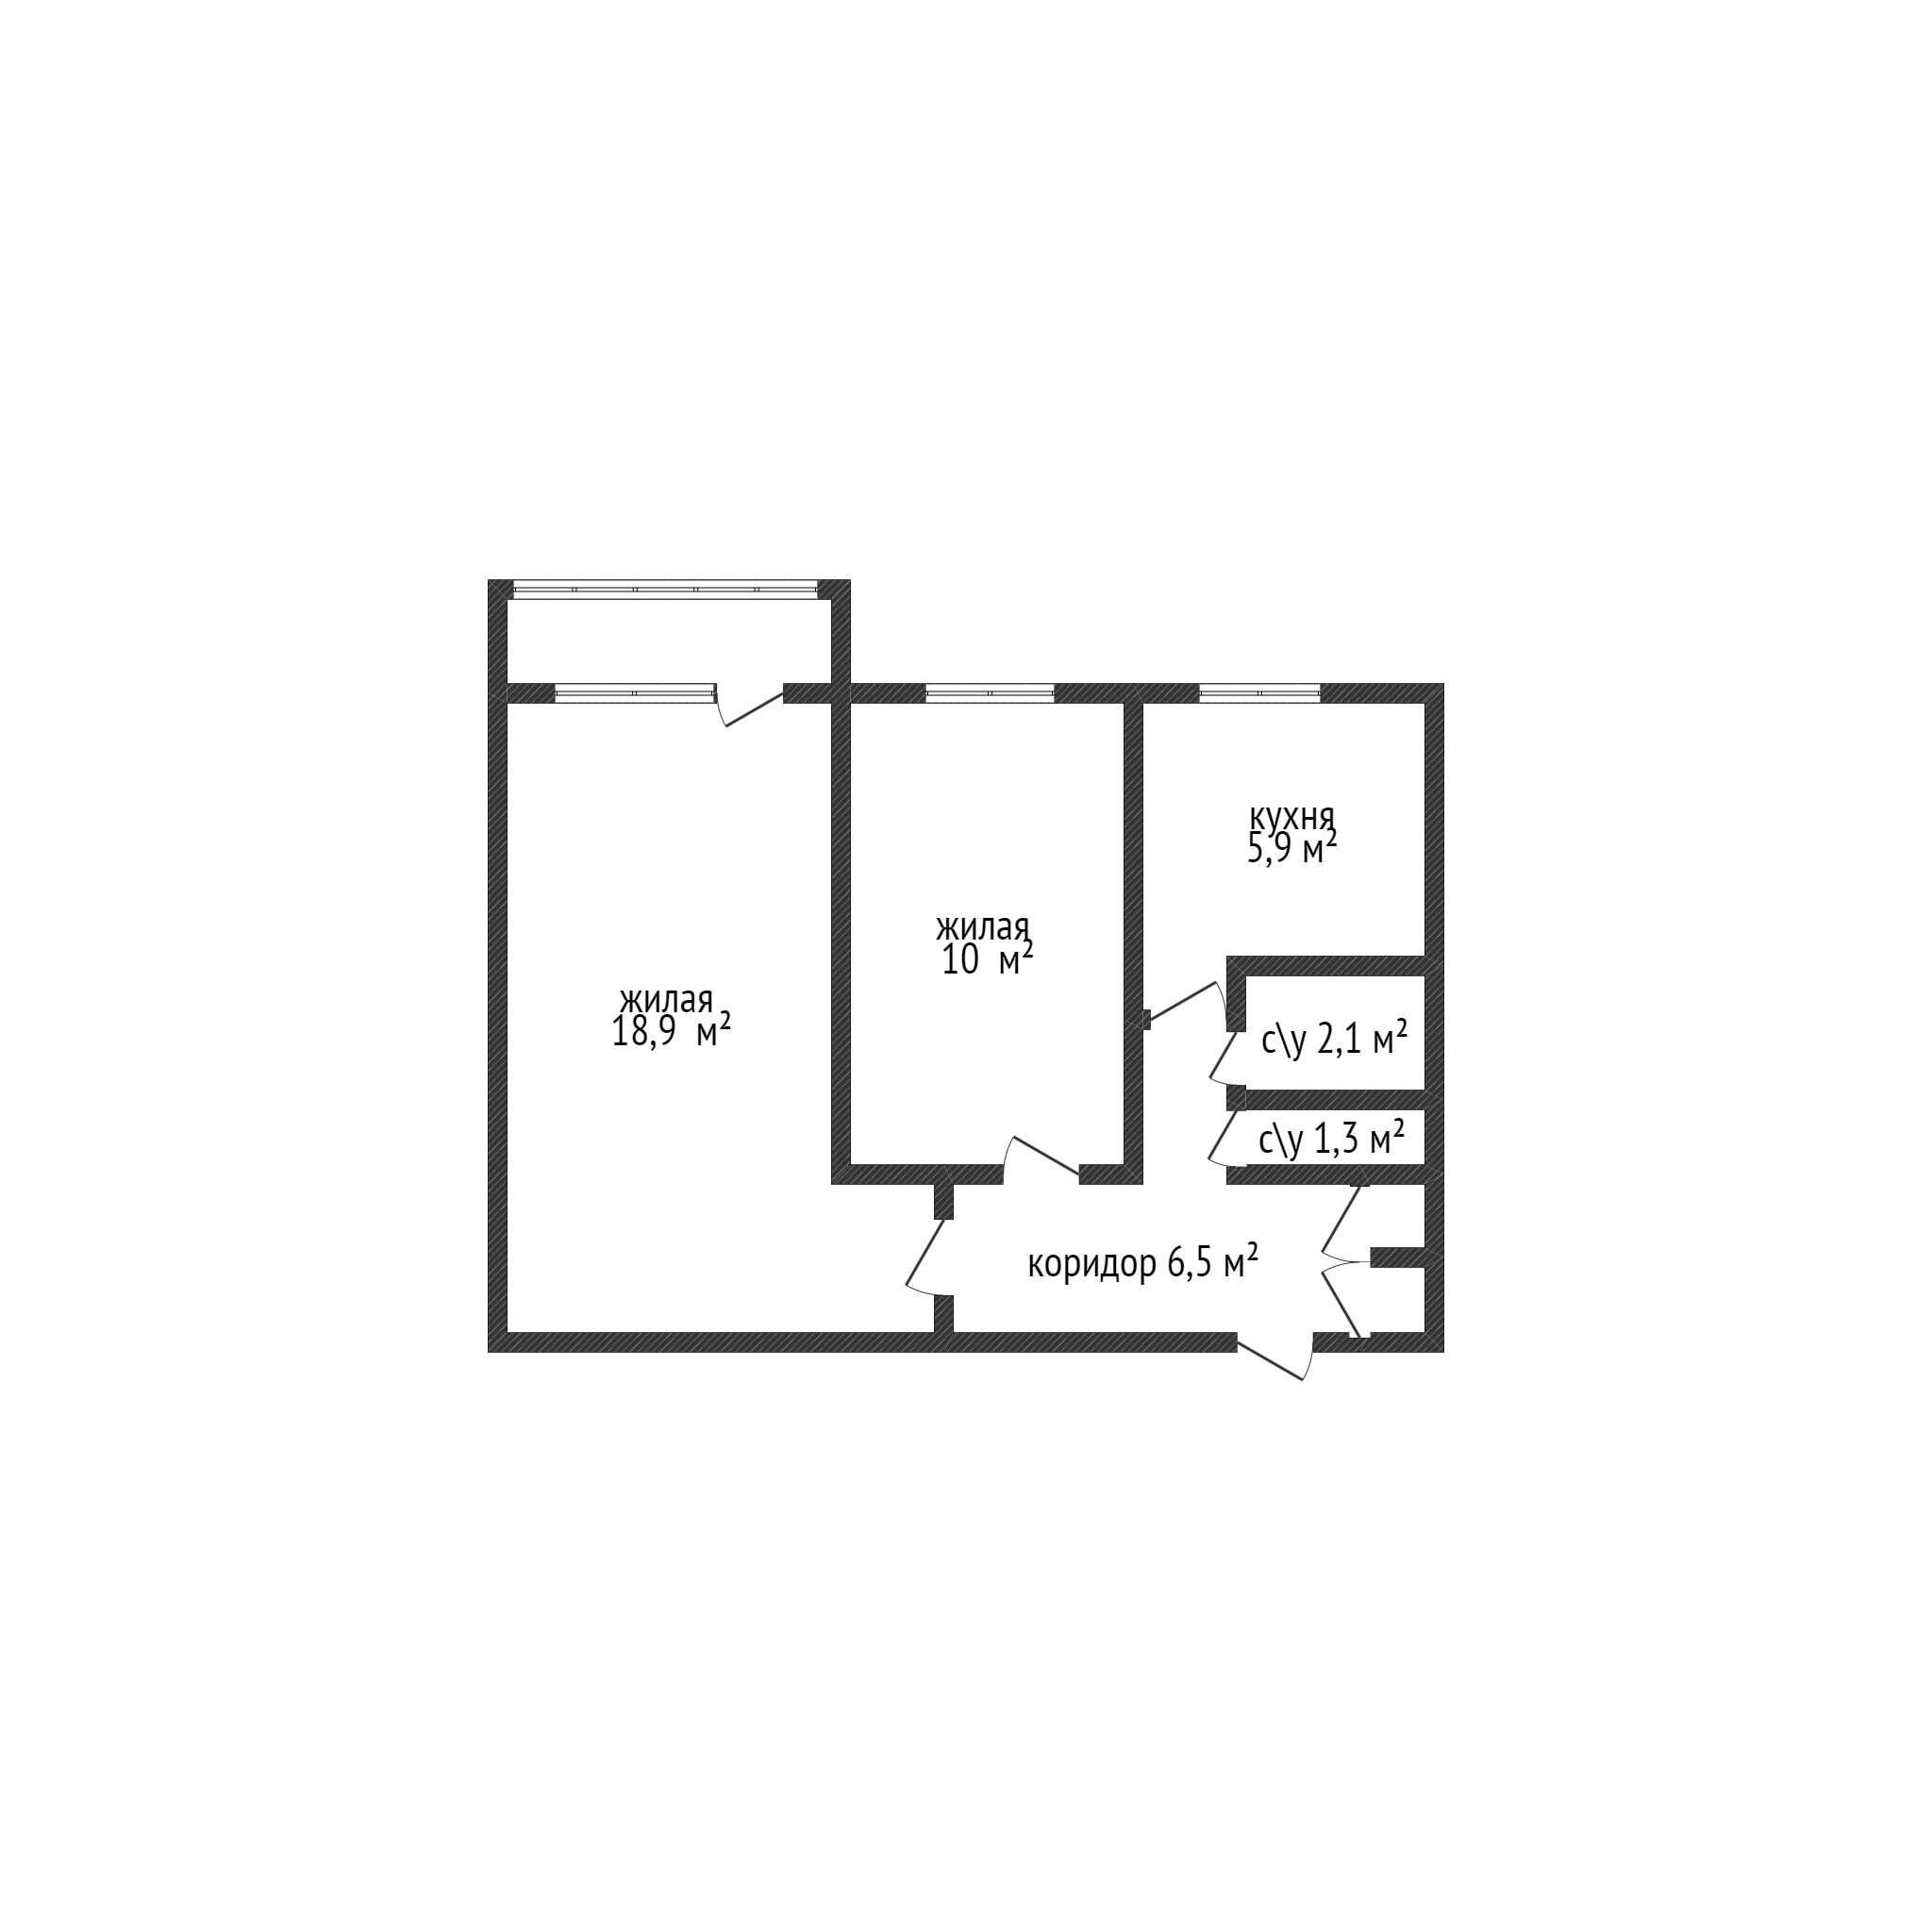 Продам 2-комн квартиру в доме Универсам, не угловая, 9 этаж